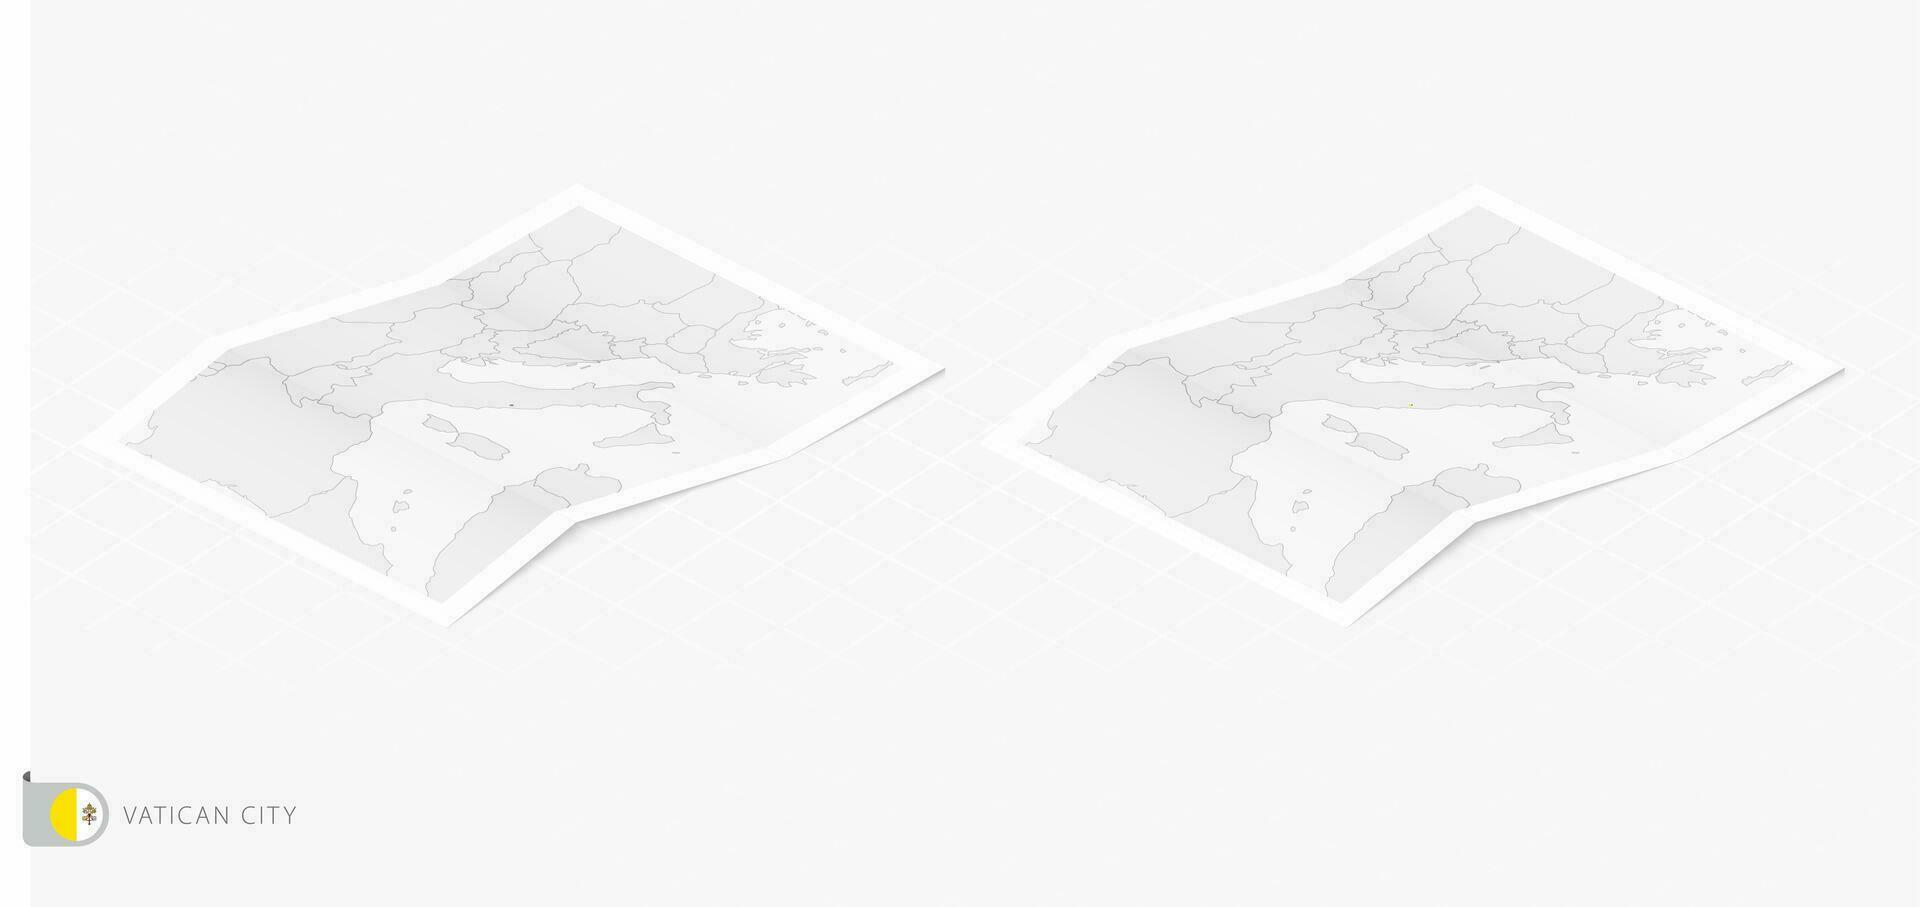 impostato di Due realistico carta geografica di Vaticano città con ombra. il bandiera e carta geografica di Vaticano città nel isometrico stile. vettore